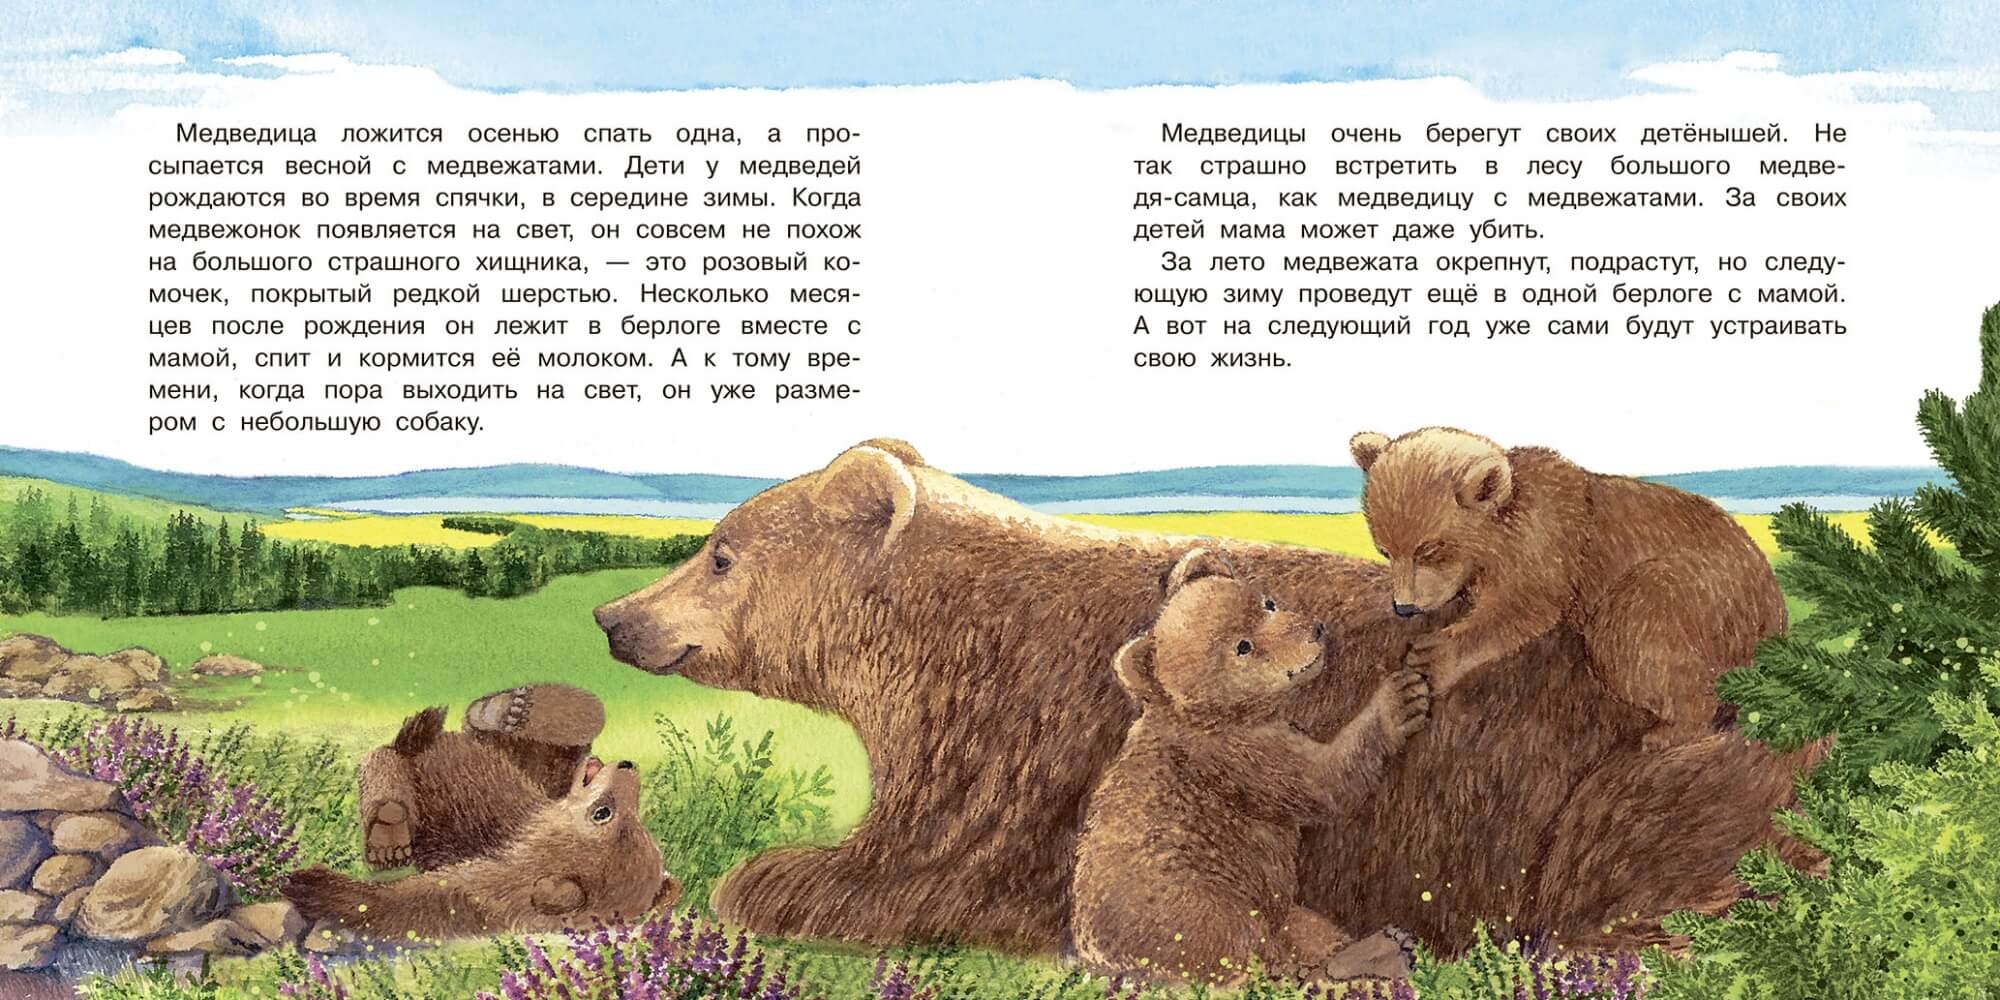 Читать про мишку. Рассказ о медведе. Рассказ про медвежонка. Сказка про медвежонка. История про мишку.